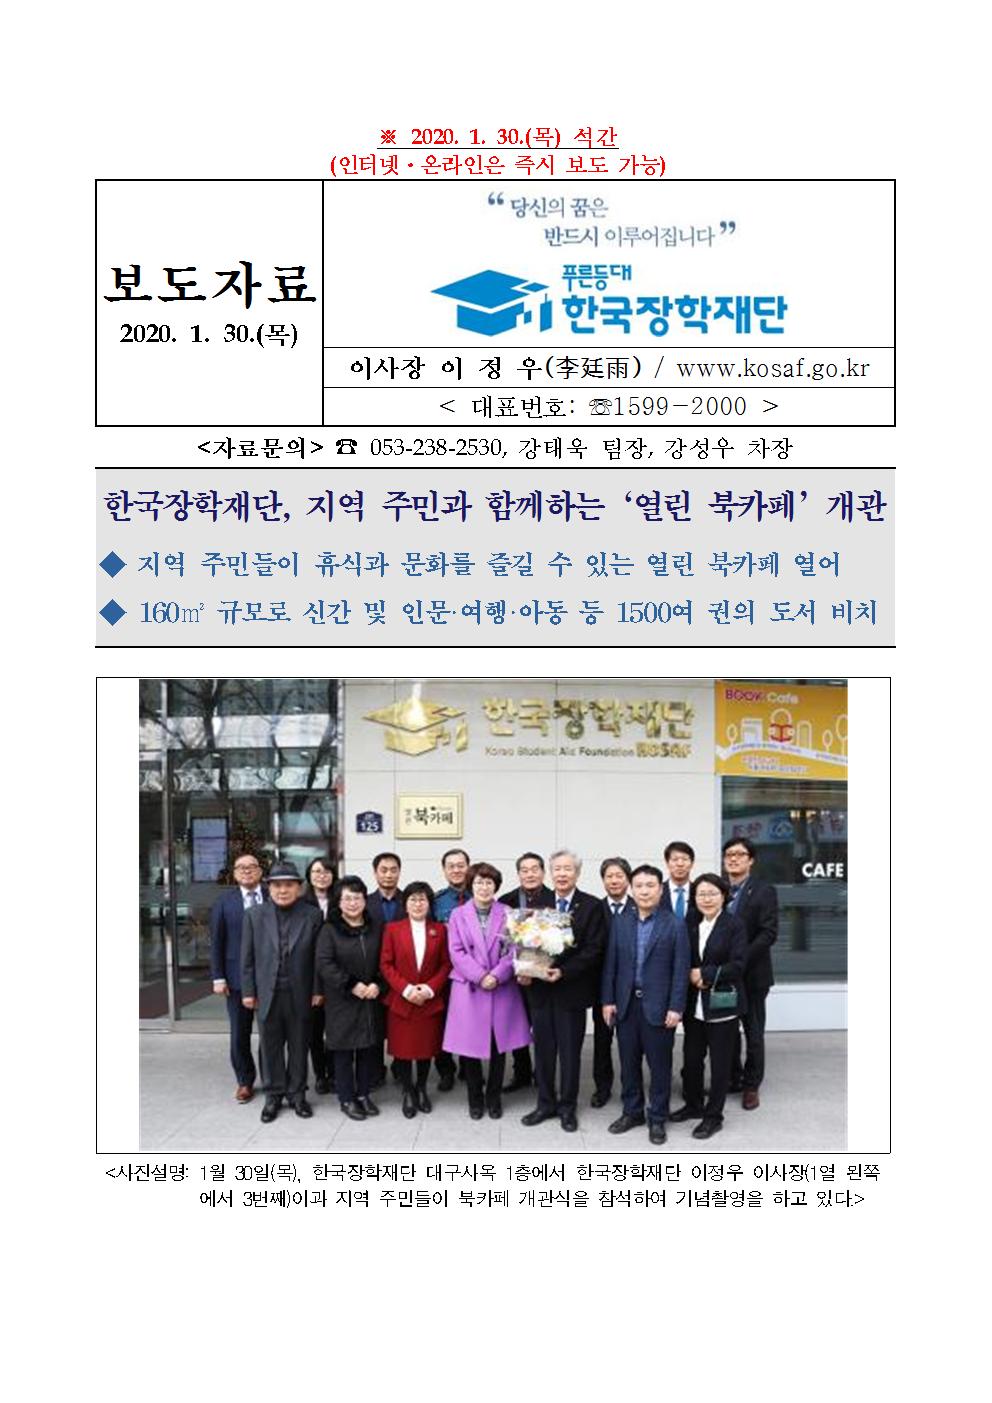 01-30(목)[보도자료] 한국장학재단 열린북카페 개소식 개최001.jpg